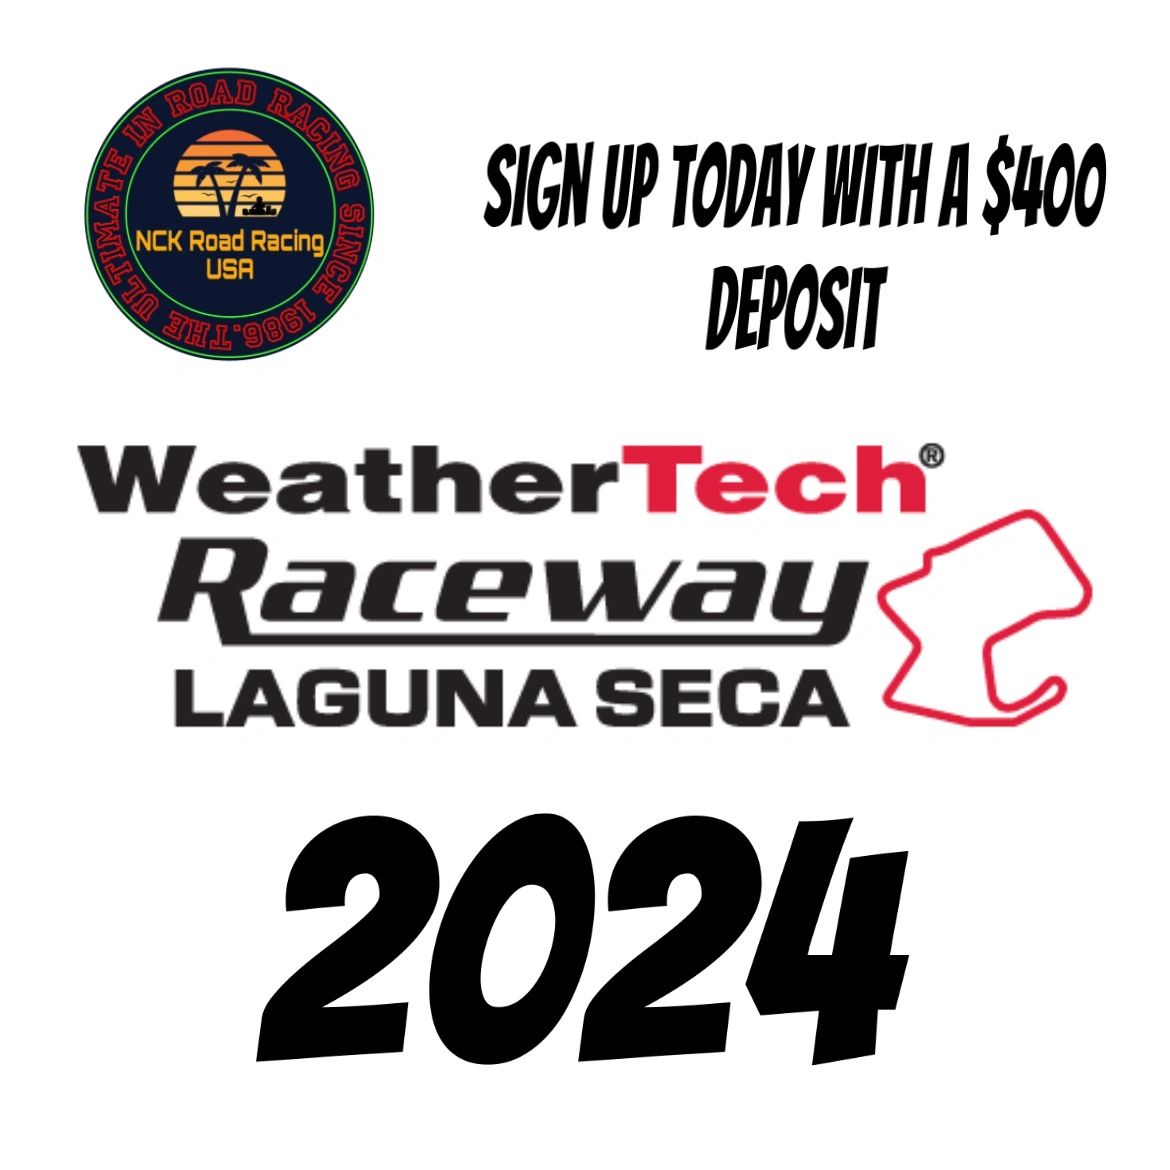 Laguna Seca 2024 Deposits!!